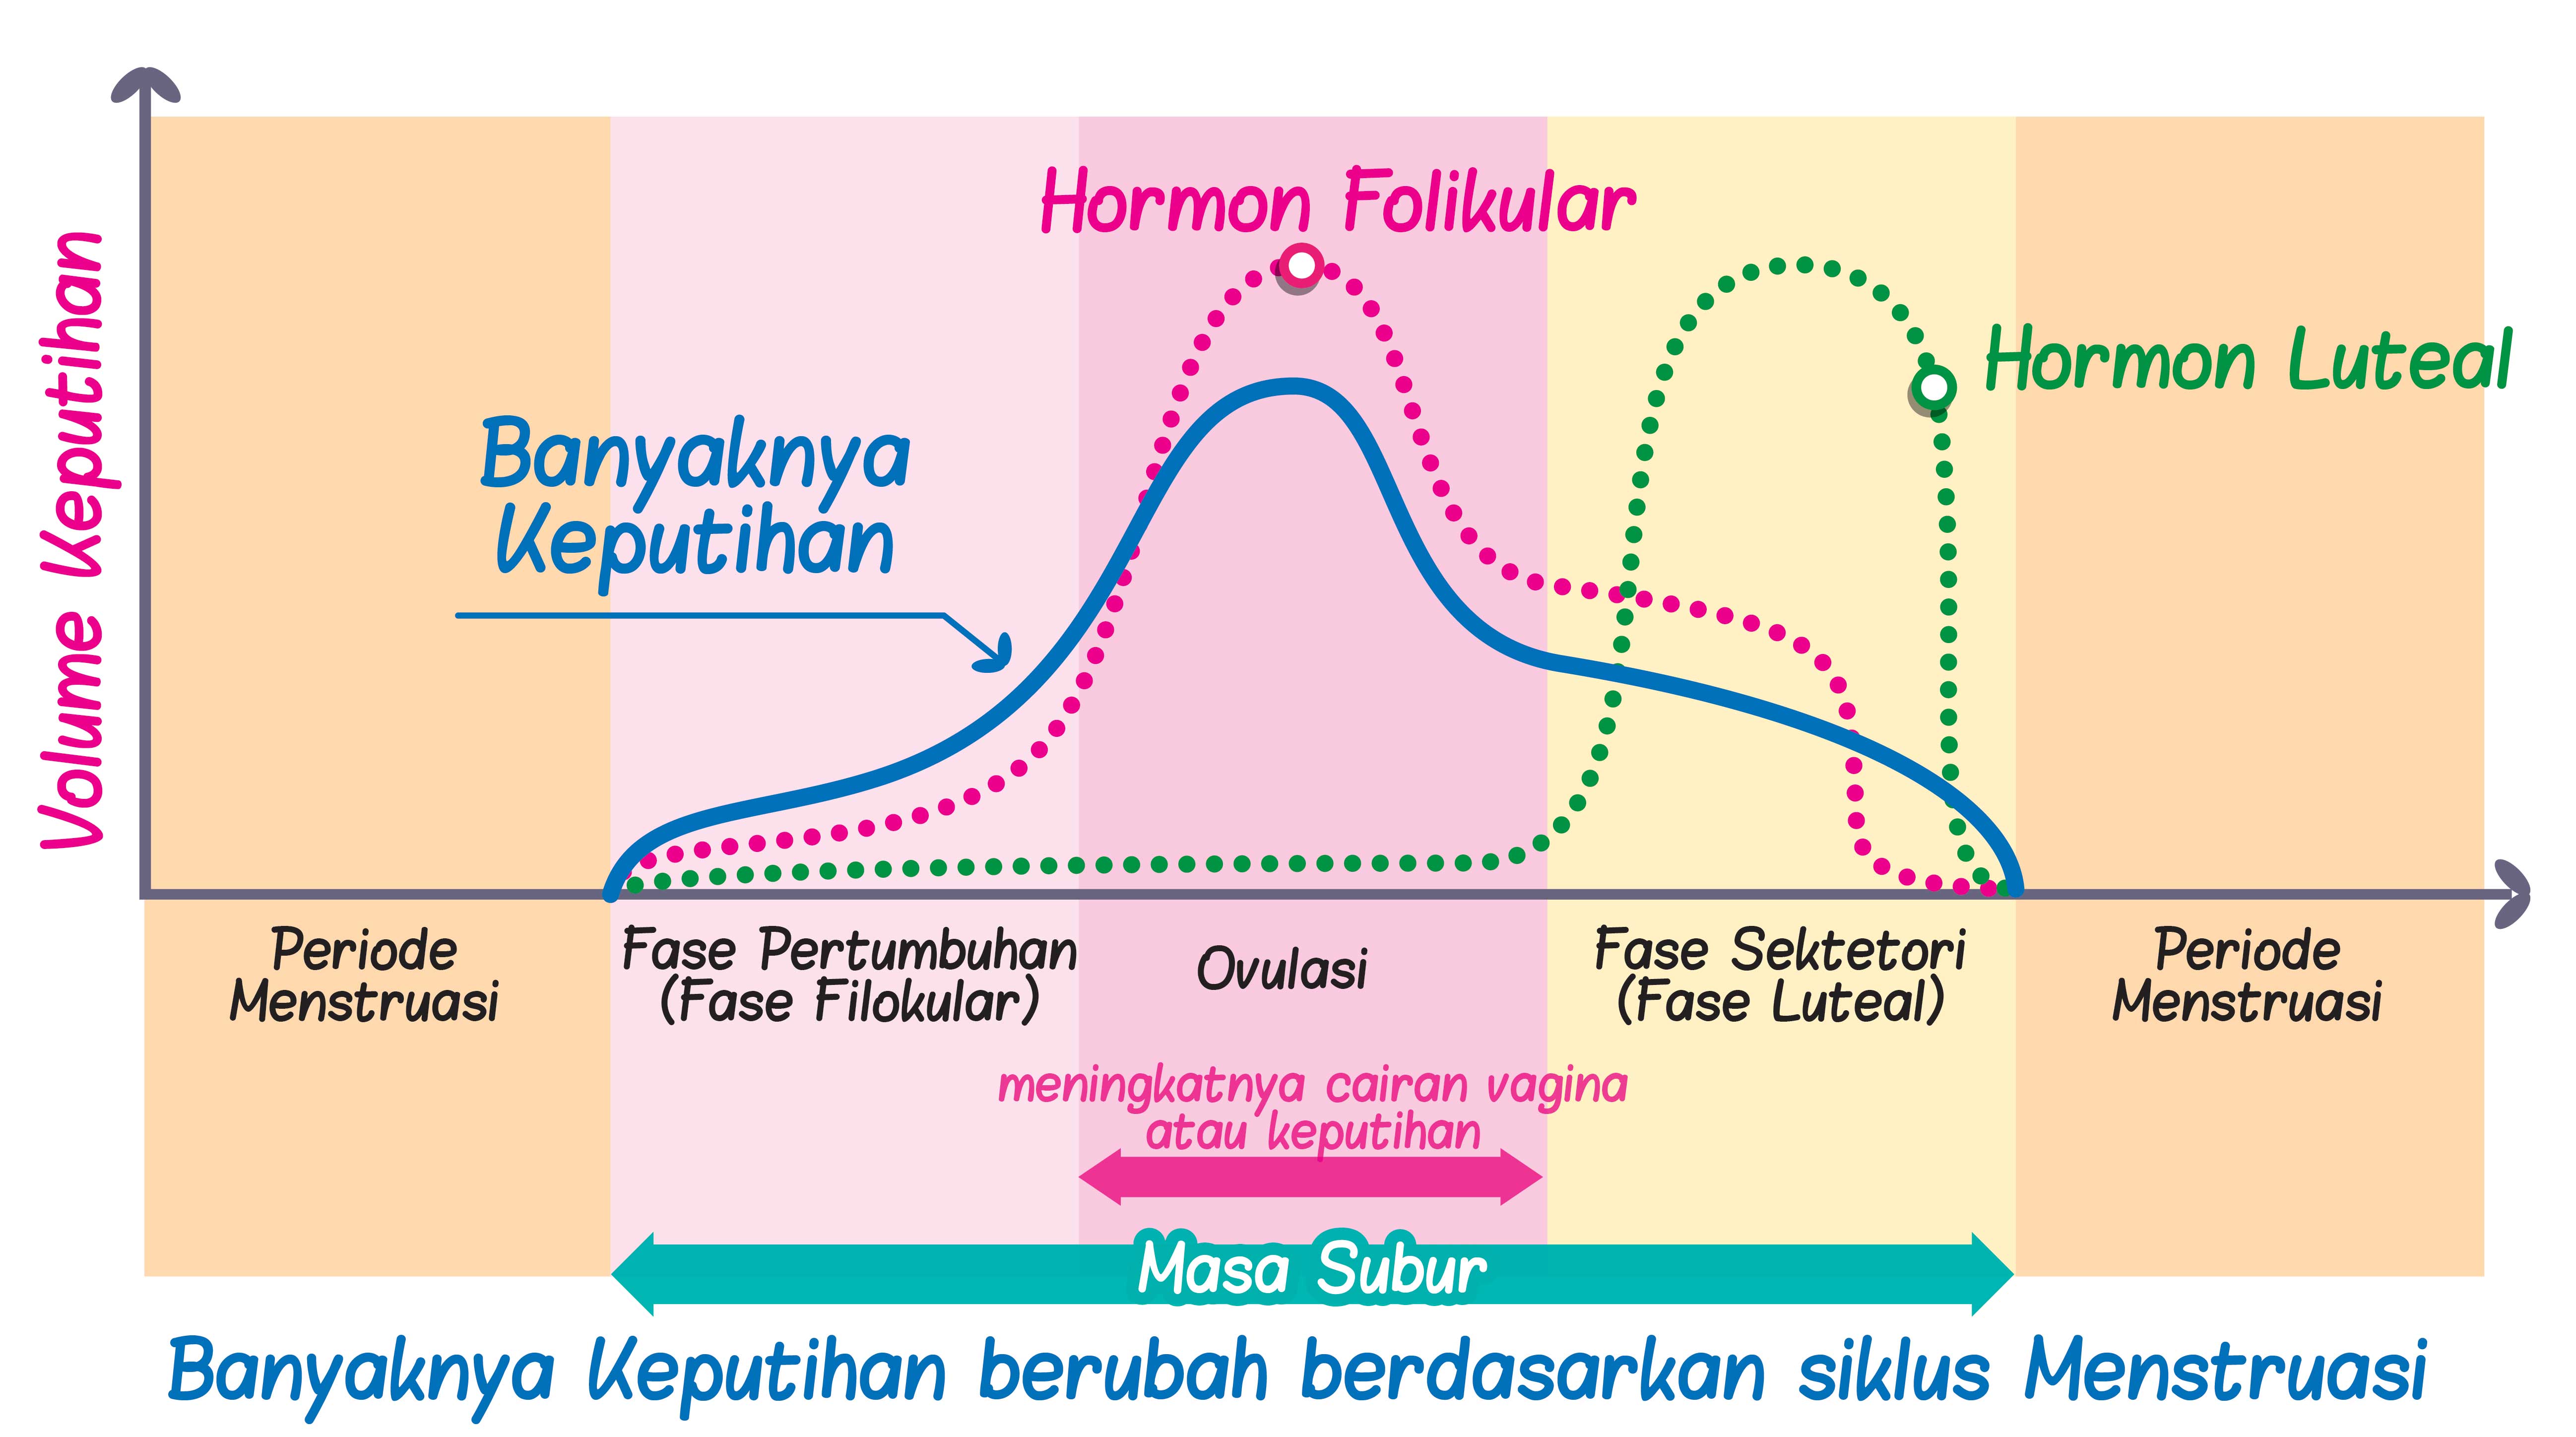 Hormon kewanitaan mempengaruhi siklus haid